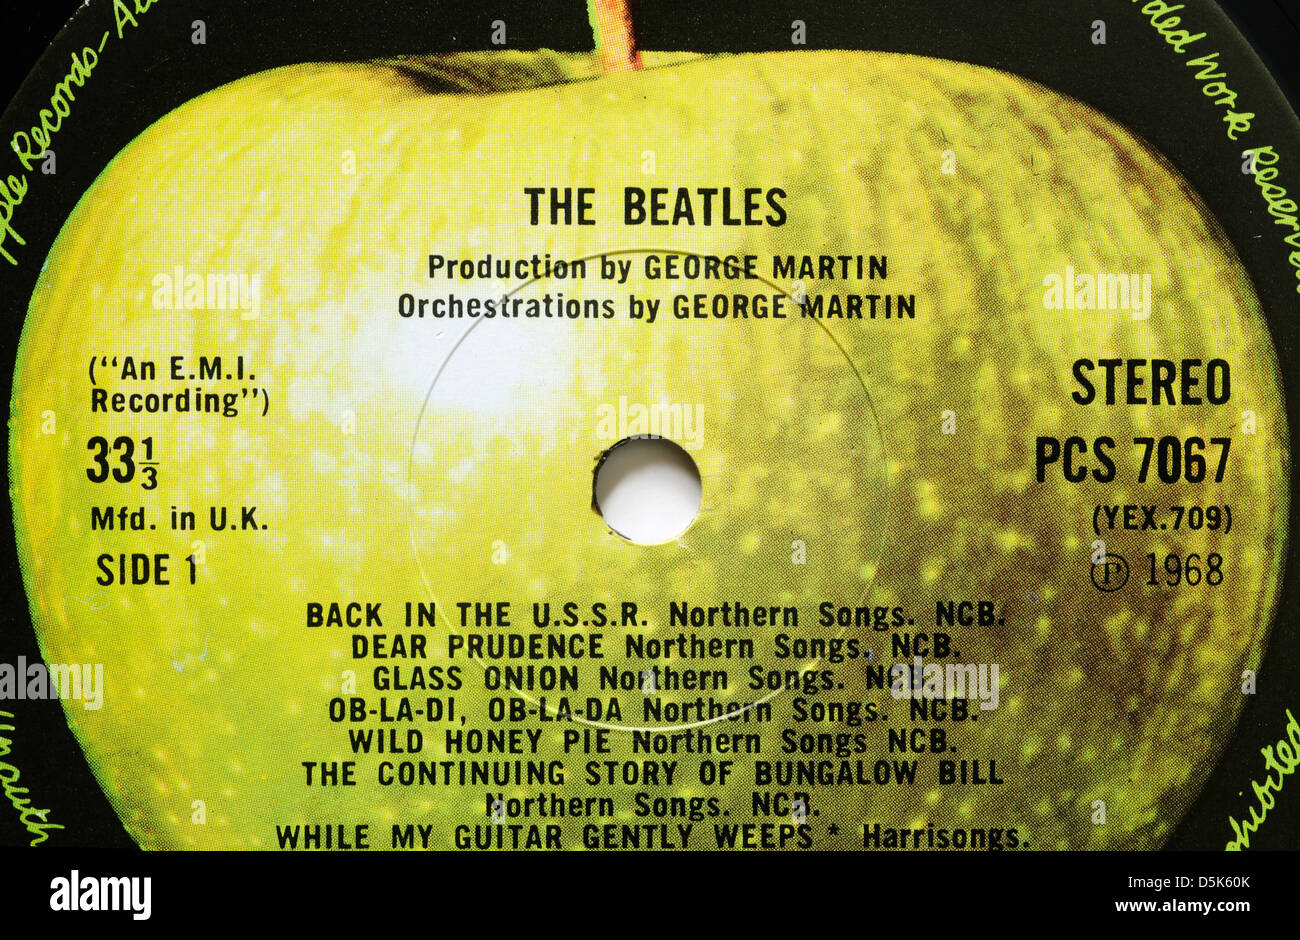 The Beatles White Album Apple record label, with classic tracks Back in the USSR, Dear Prudence and Ob-la-di ob-la-da Stock Photo